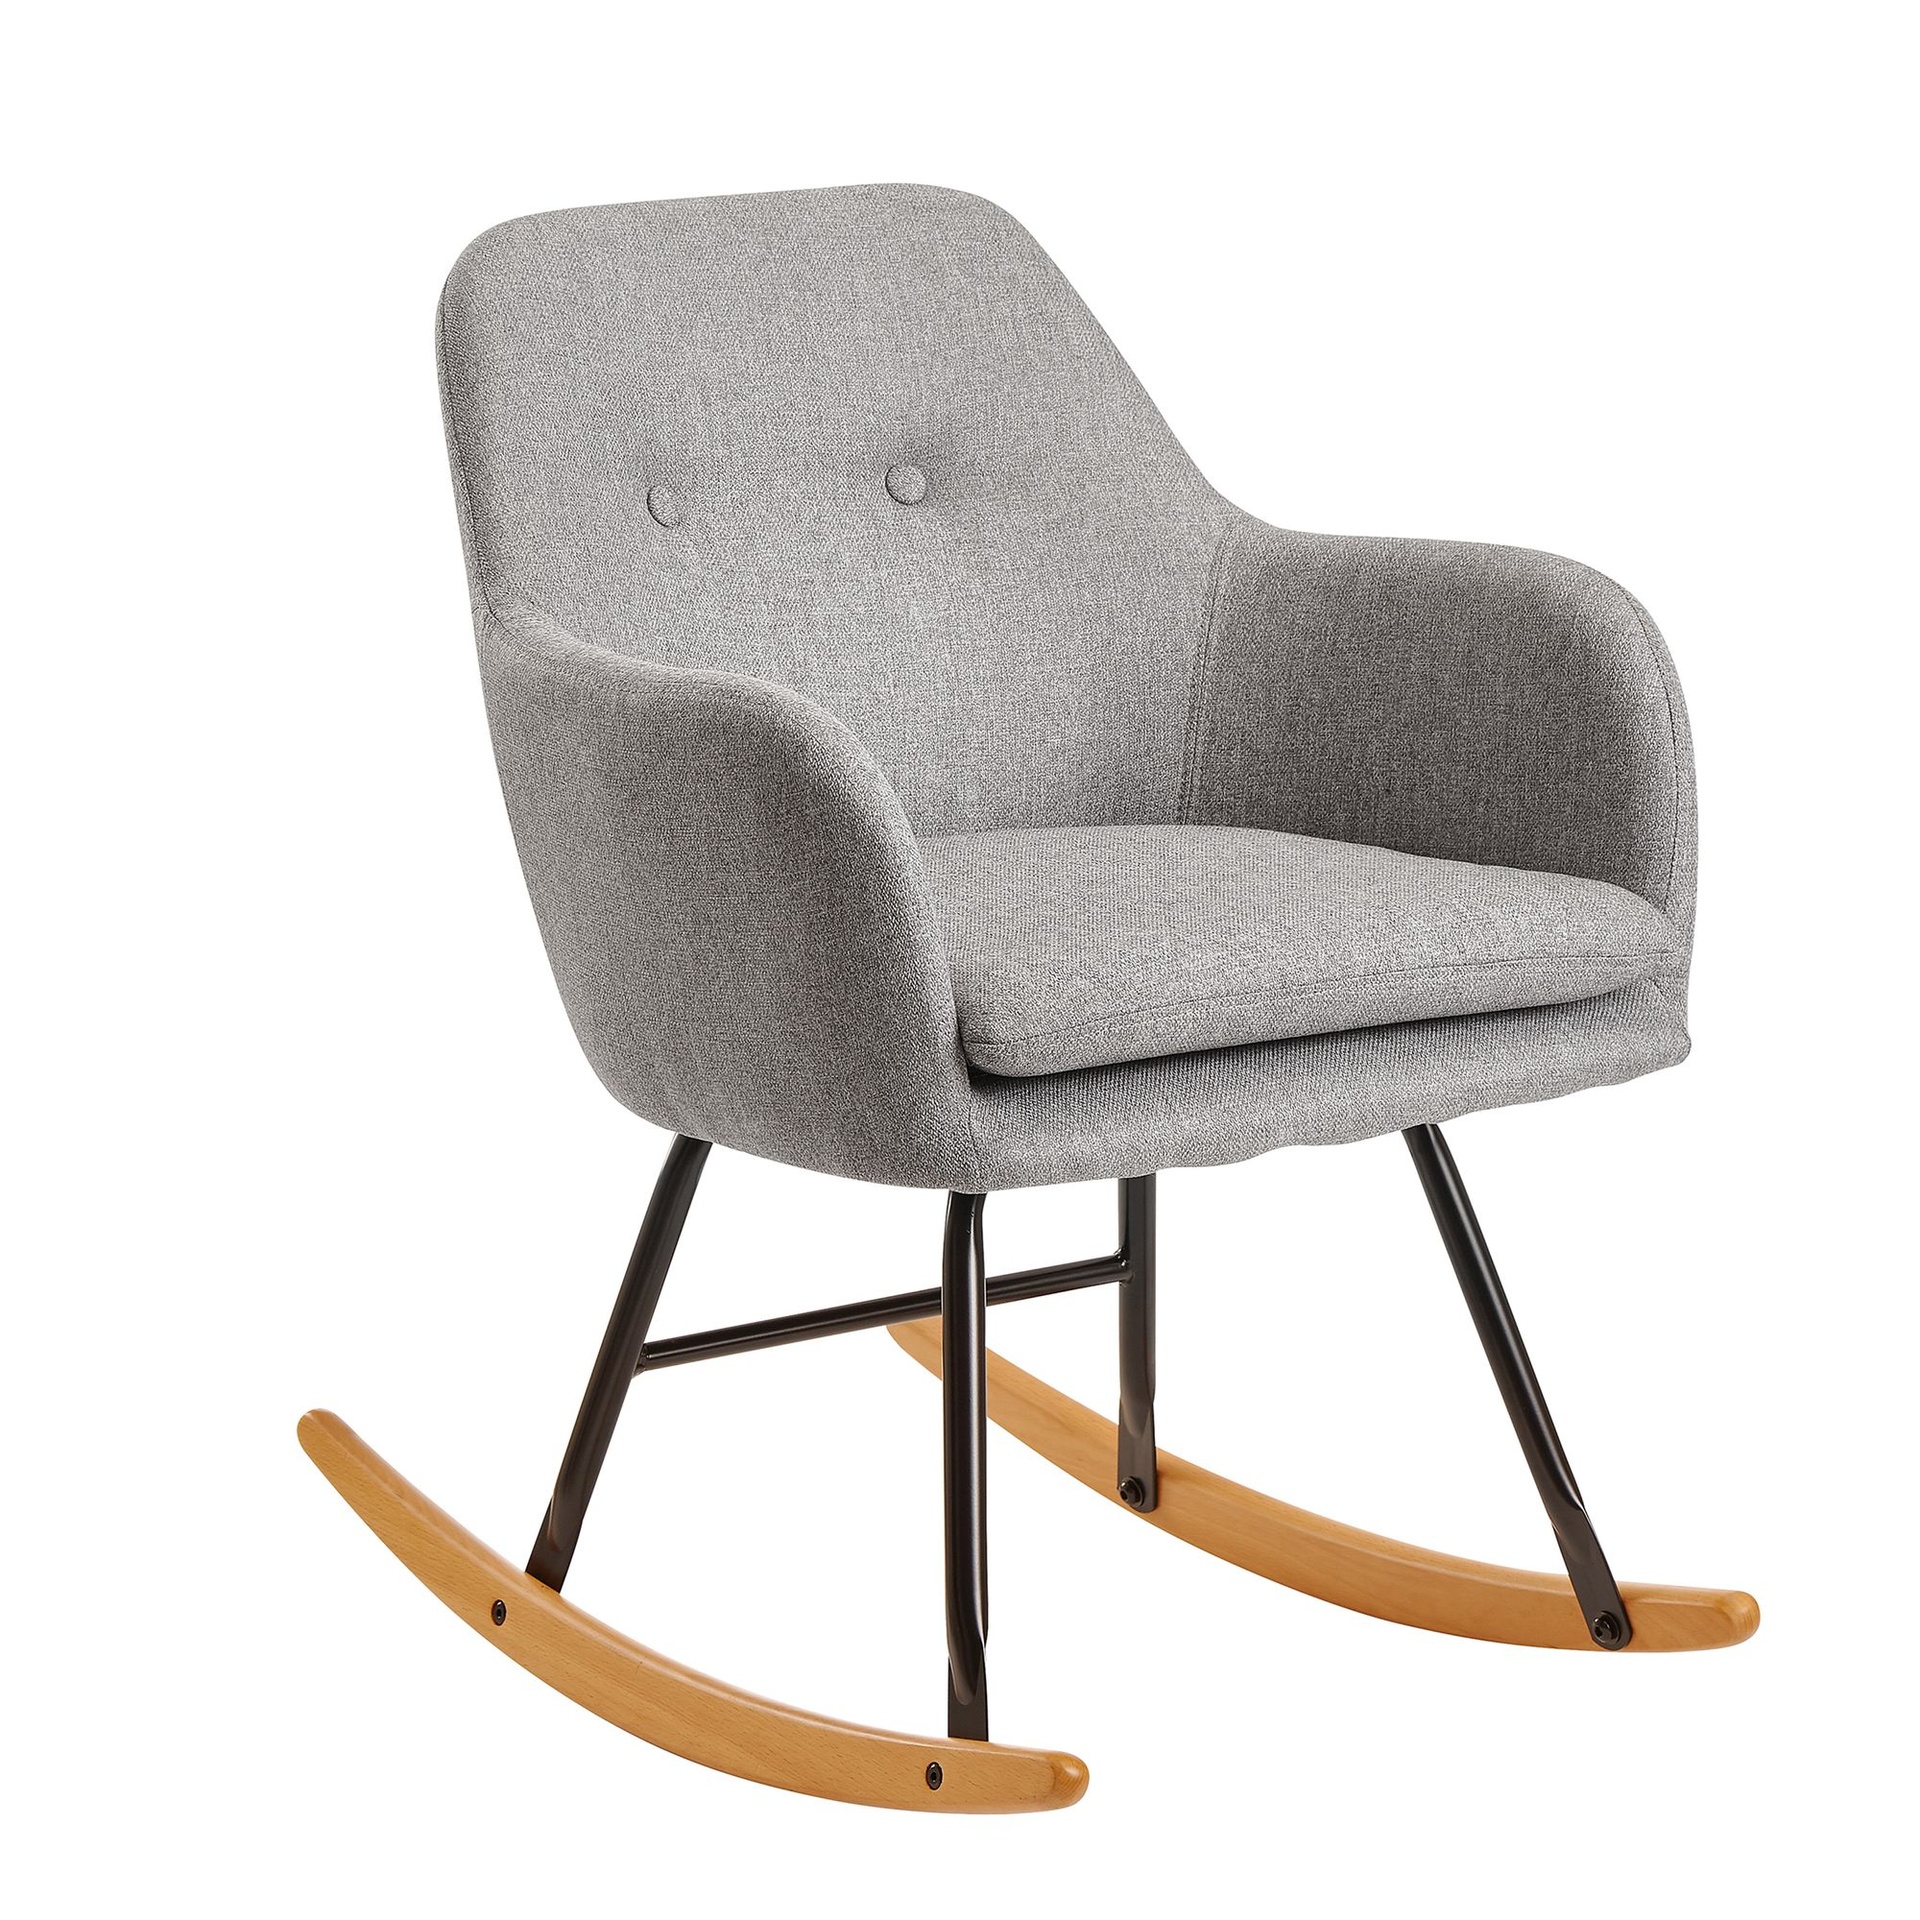 [A10057] Rocking chair gris clair 71x76x70cm design Malmo tissu / bois